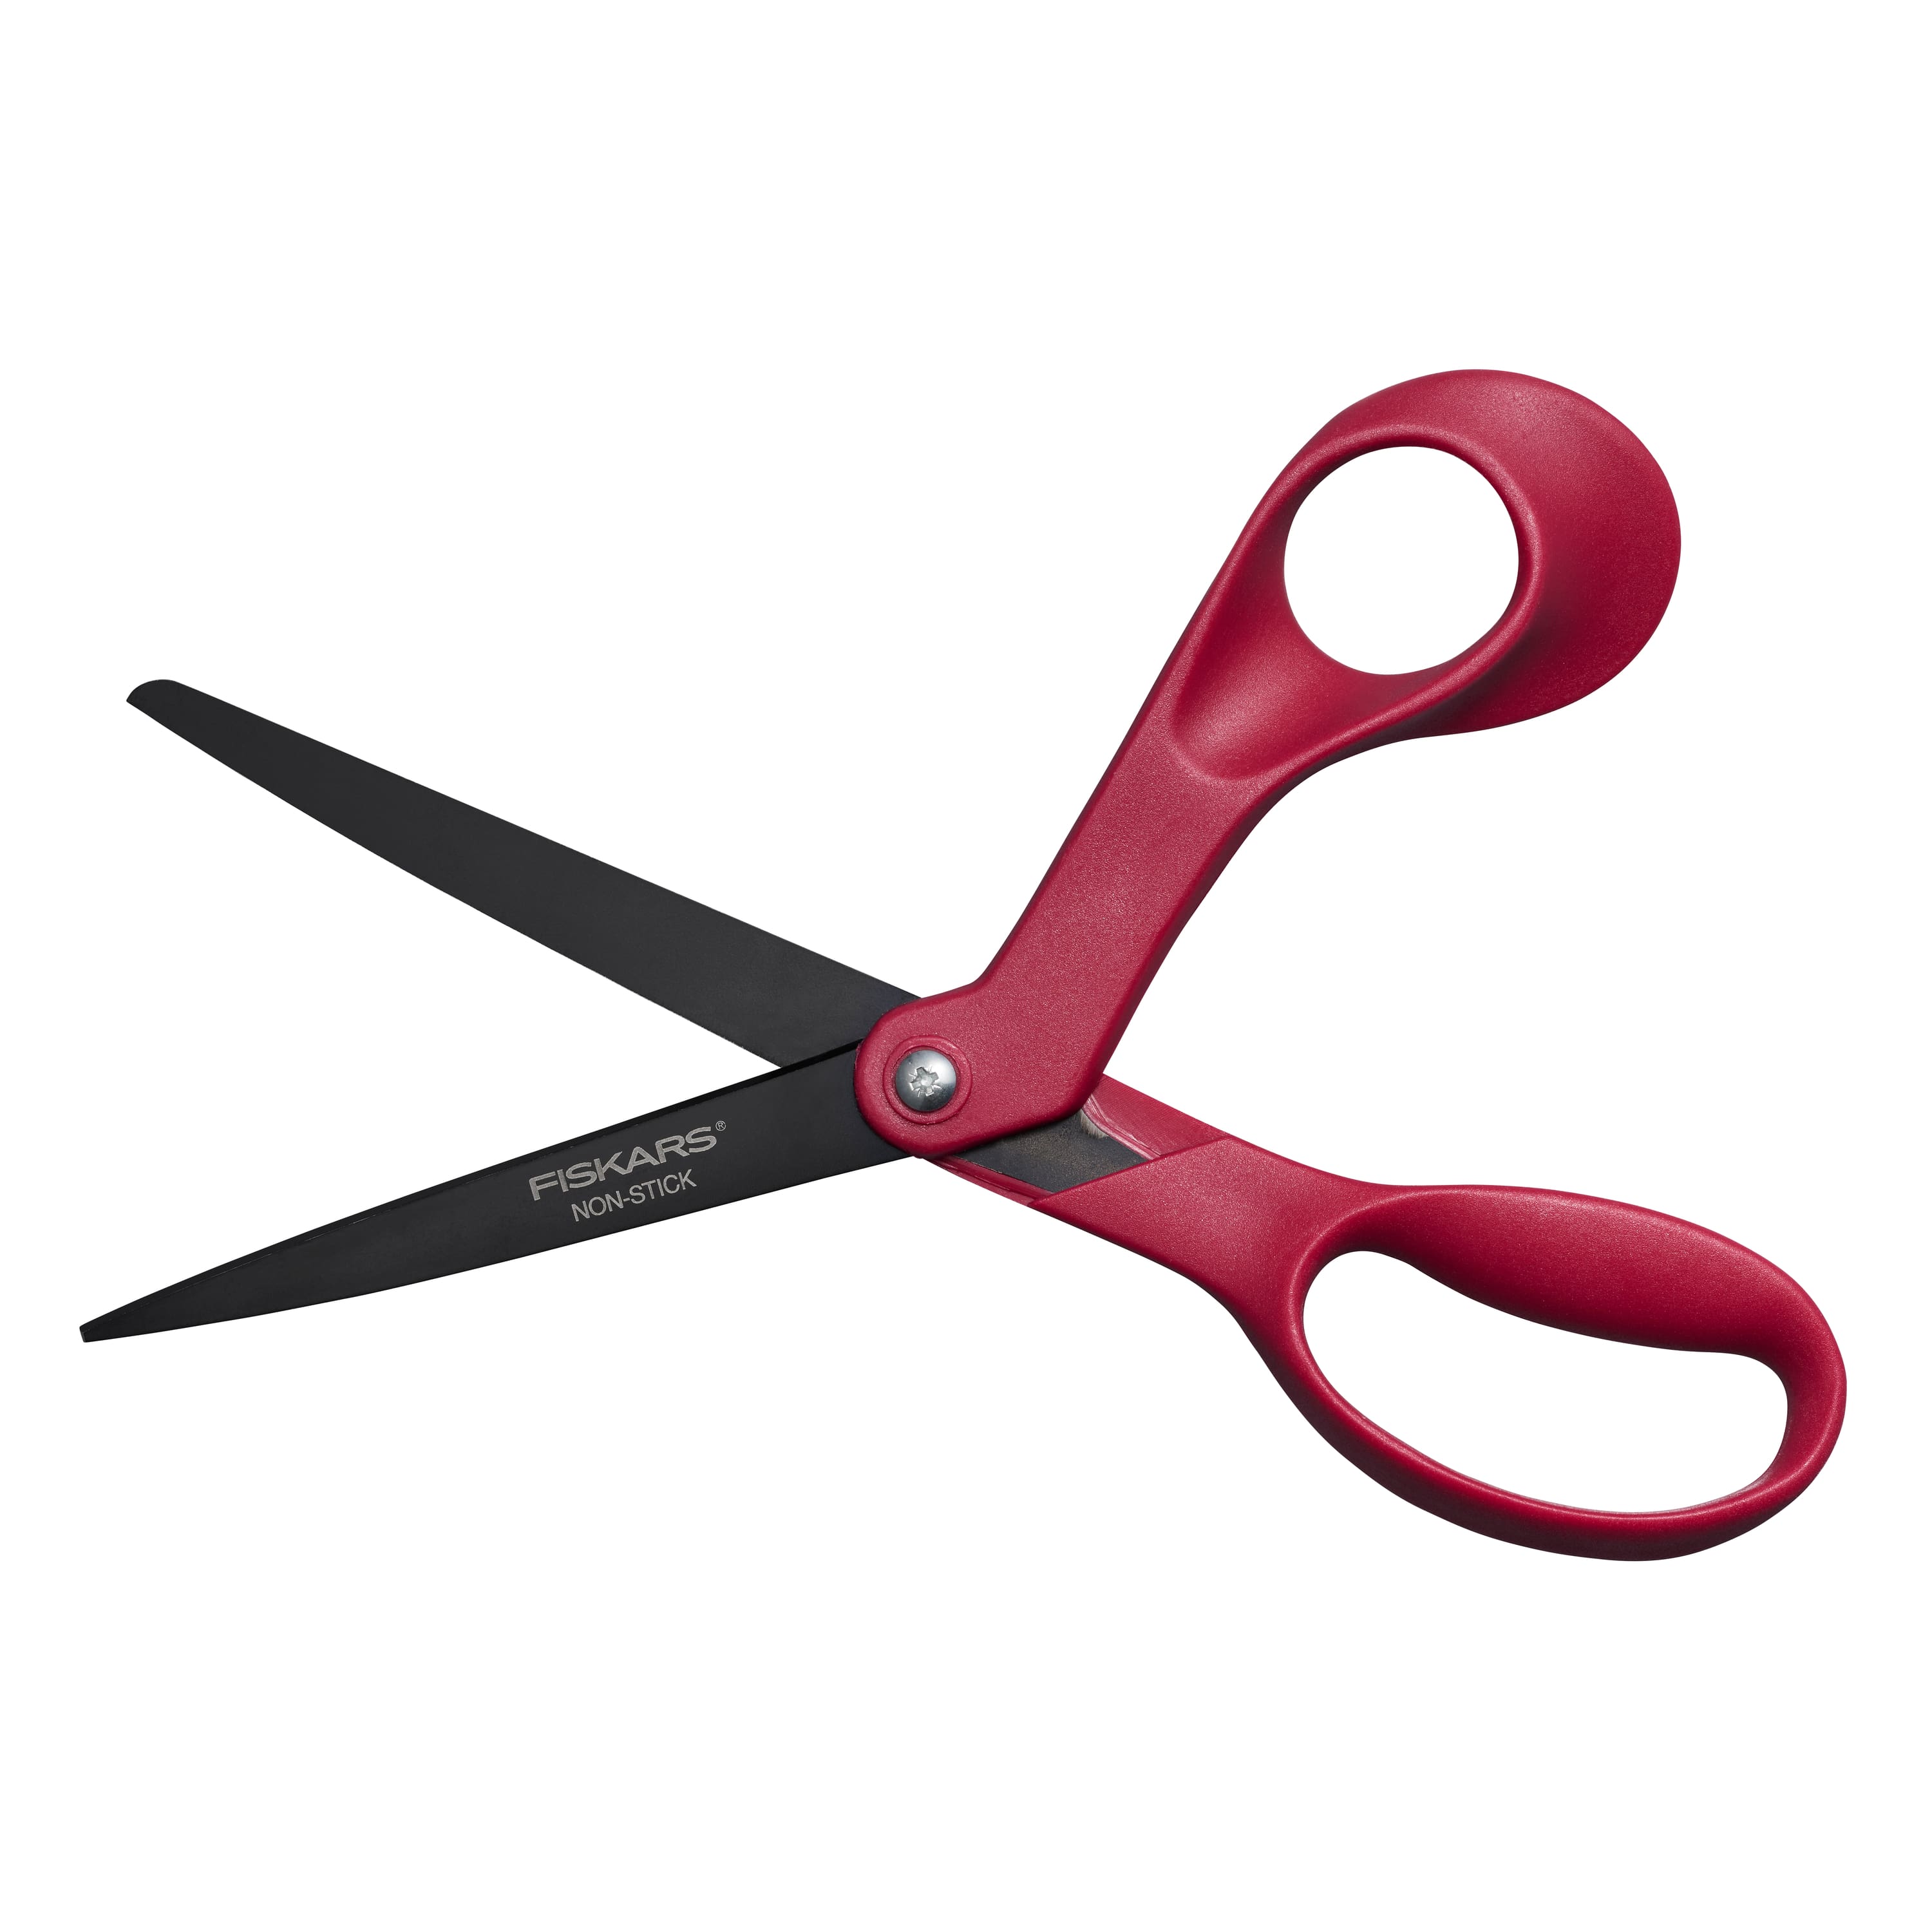 Fiskars&#xAE; 8&#x22; Wild Cherry Non-Stick Scissors